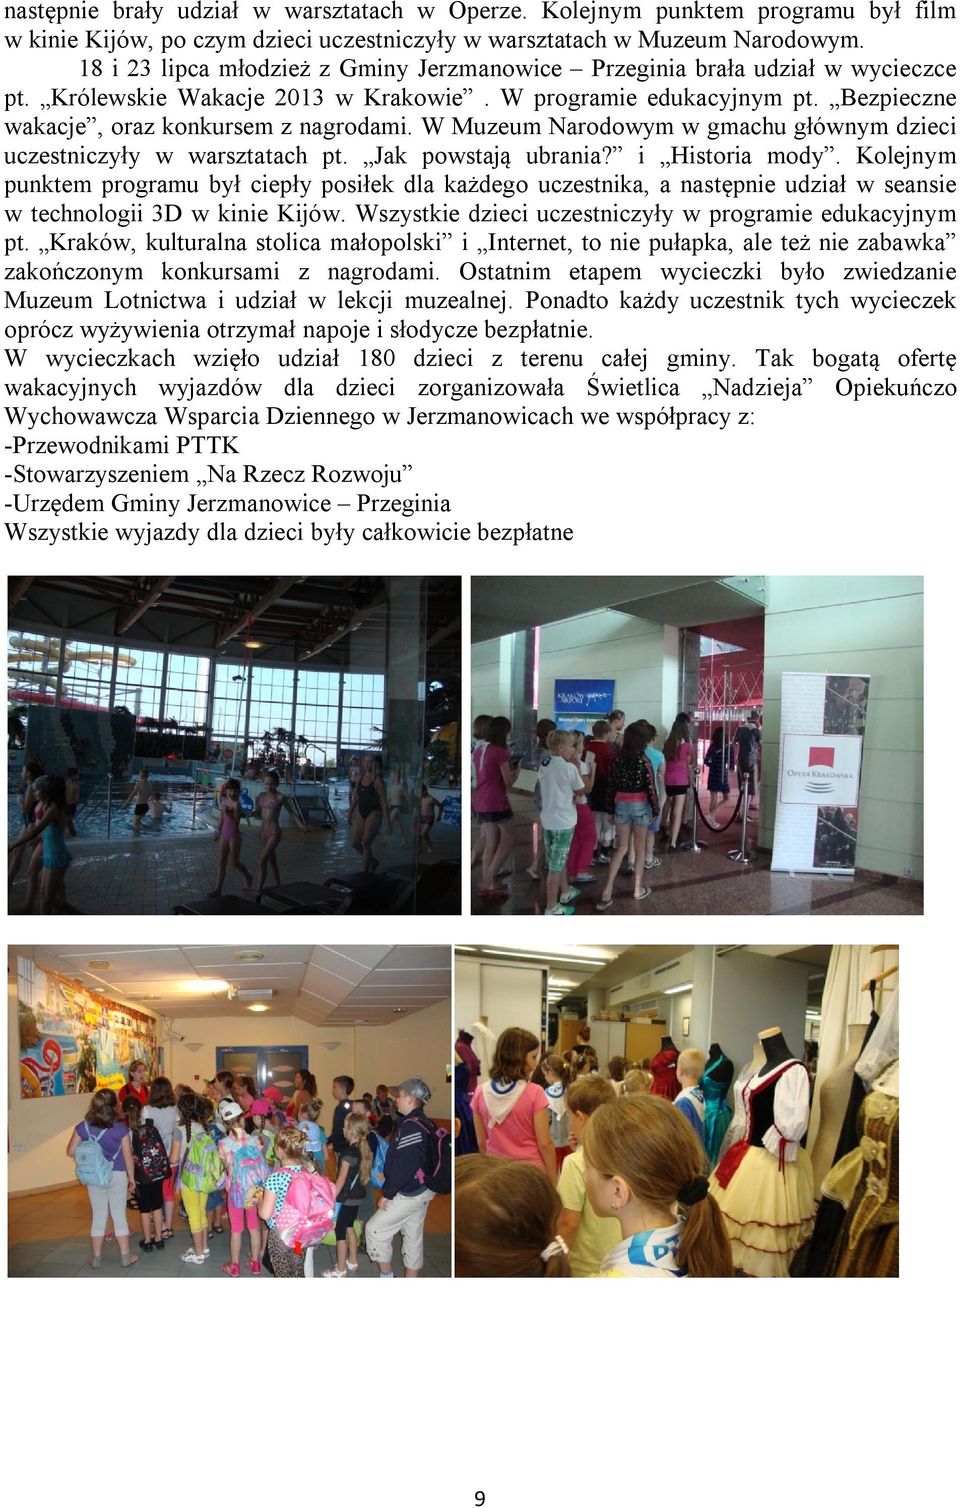 W Muzeum Narodowym w gmachu głównym dzieci uczestniczyły w warsztatach pt. Jak powstają ubrania? i Historia mody.